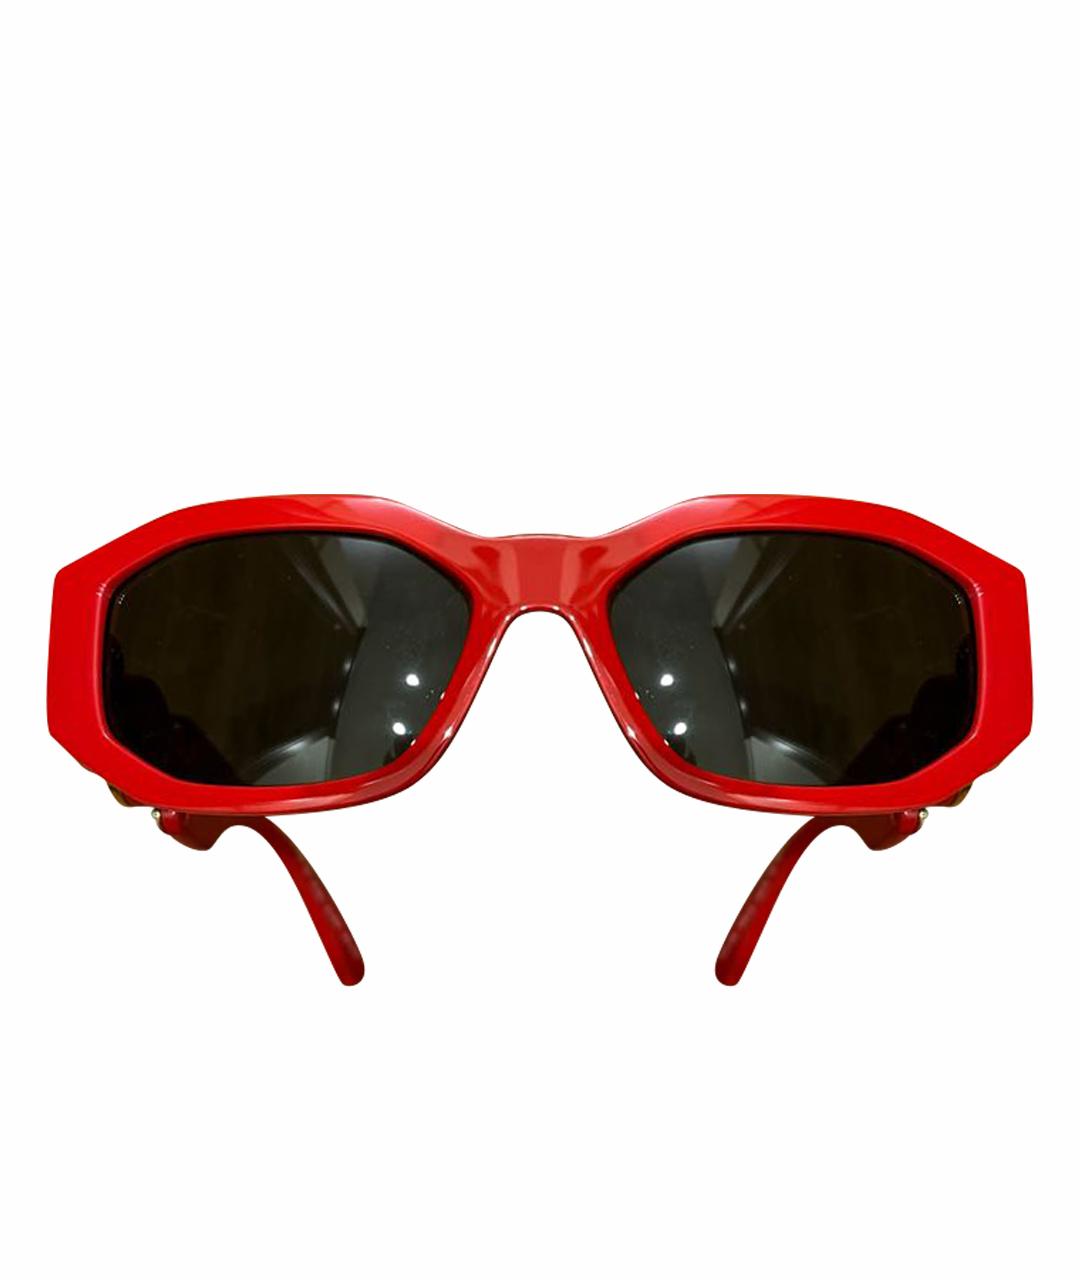 VERSACE Красные пластиковые солнцезащитные очки, фото 1